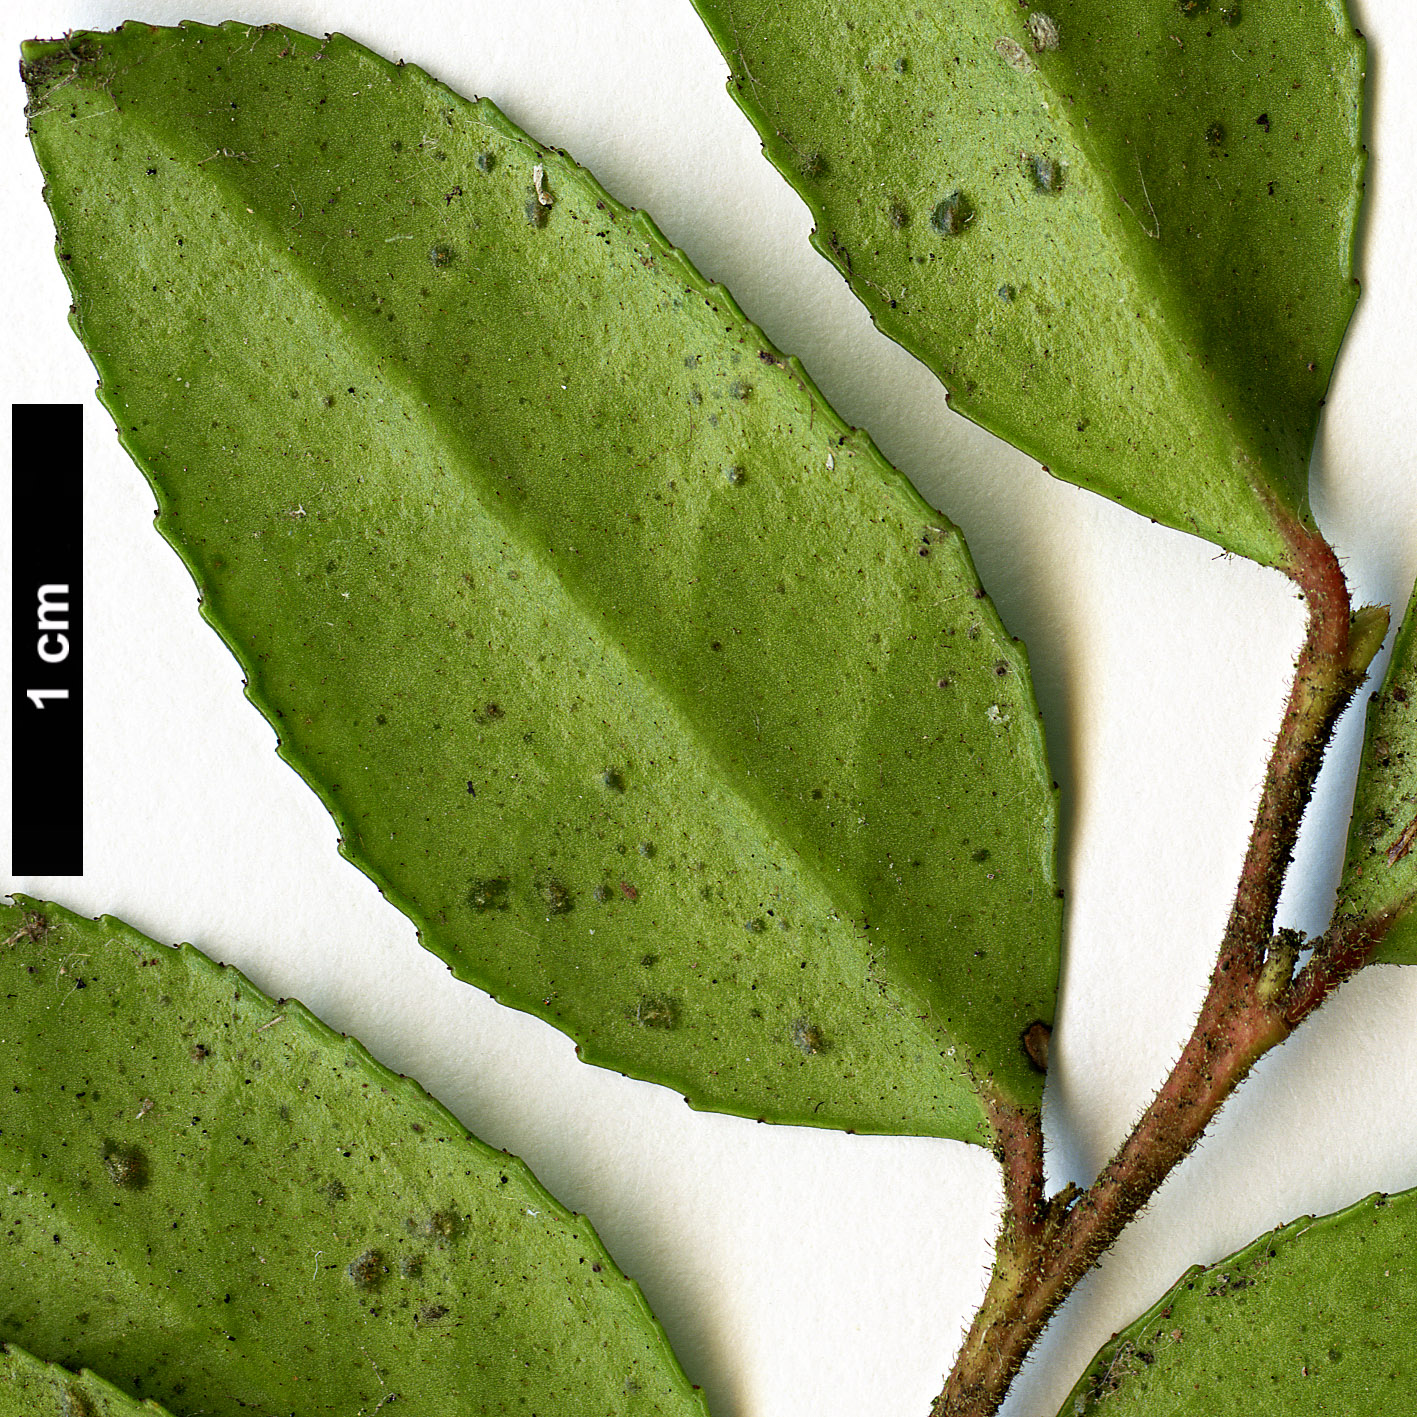 High resolution image: Family: Ericaceae - Genus: Vaccinium - Taxon: ovatum